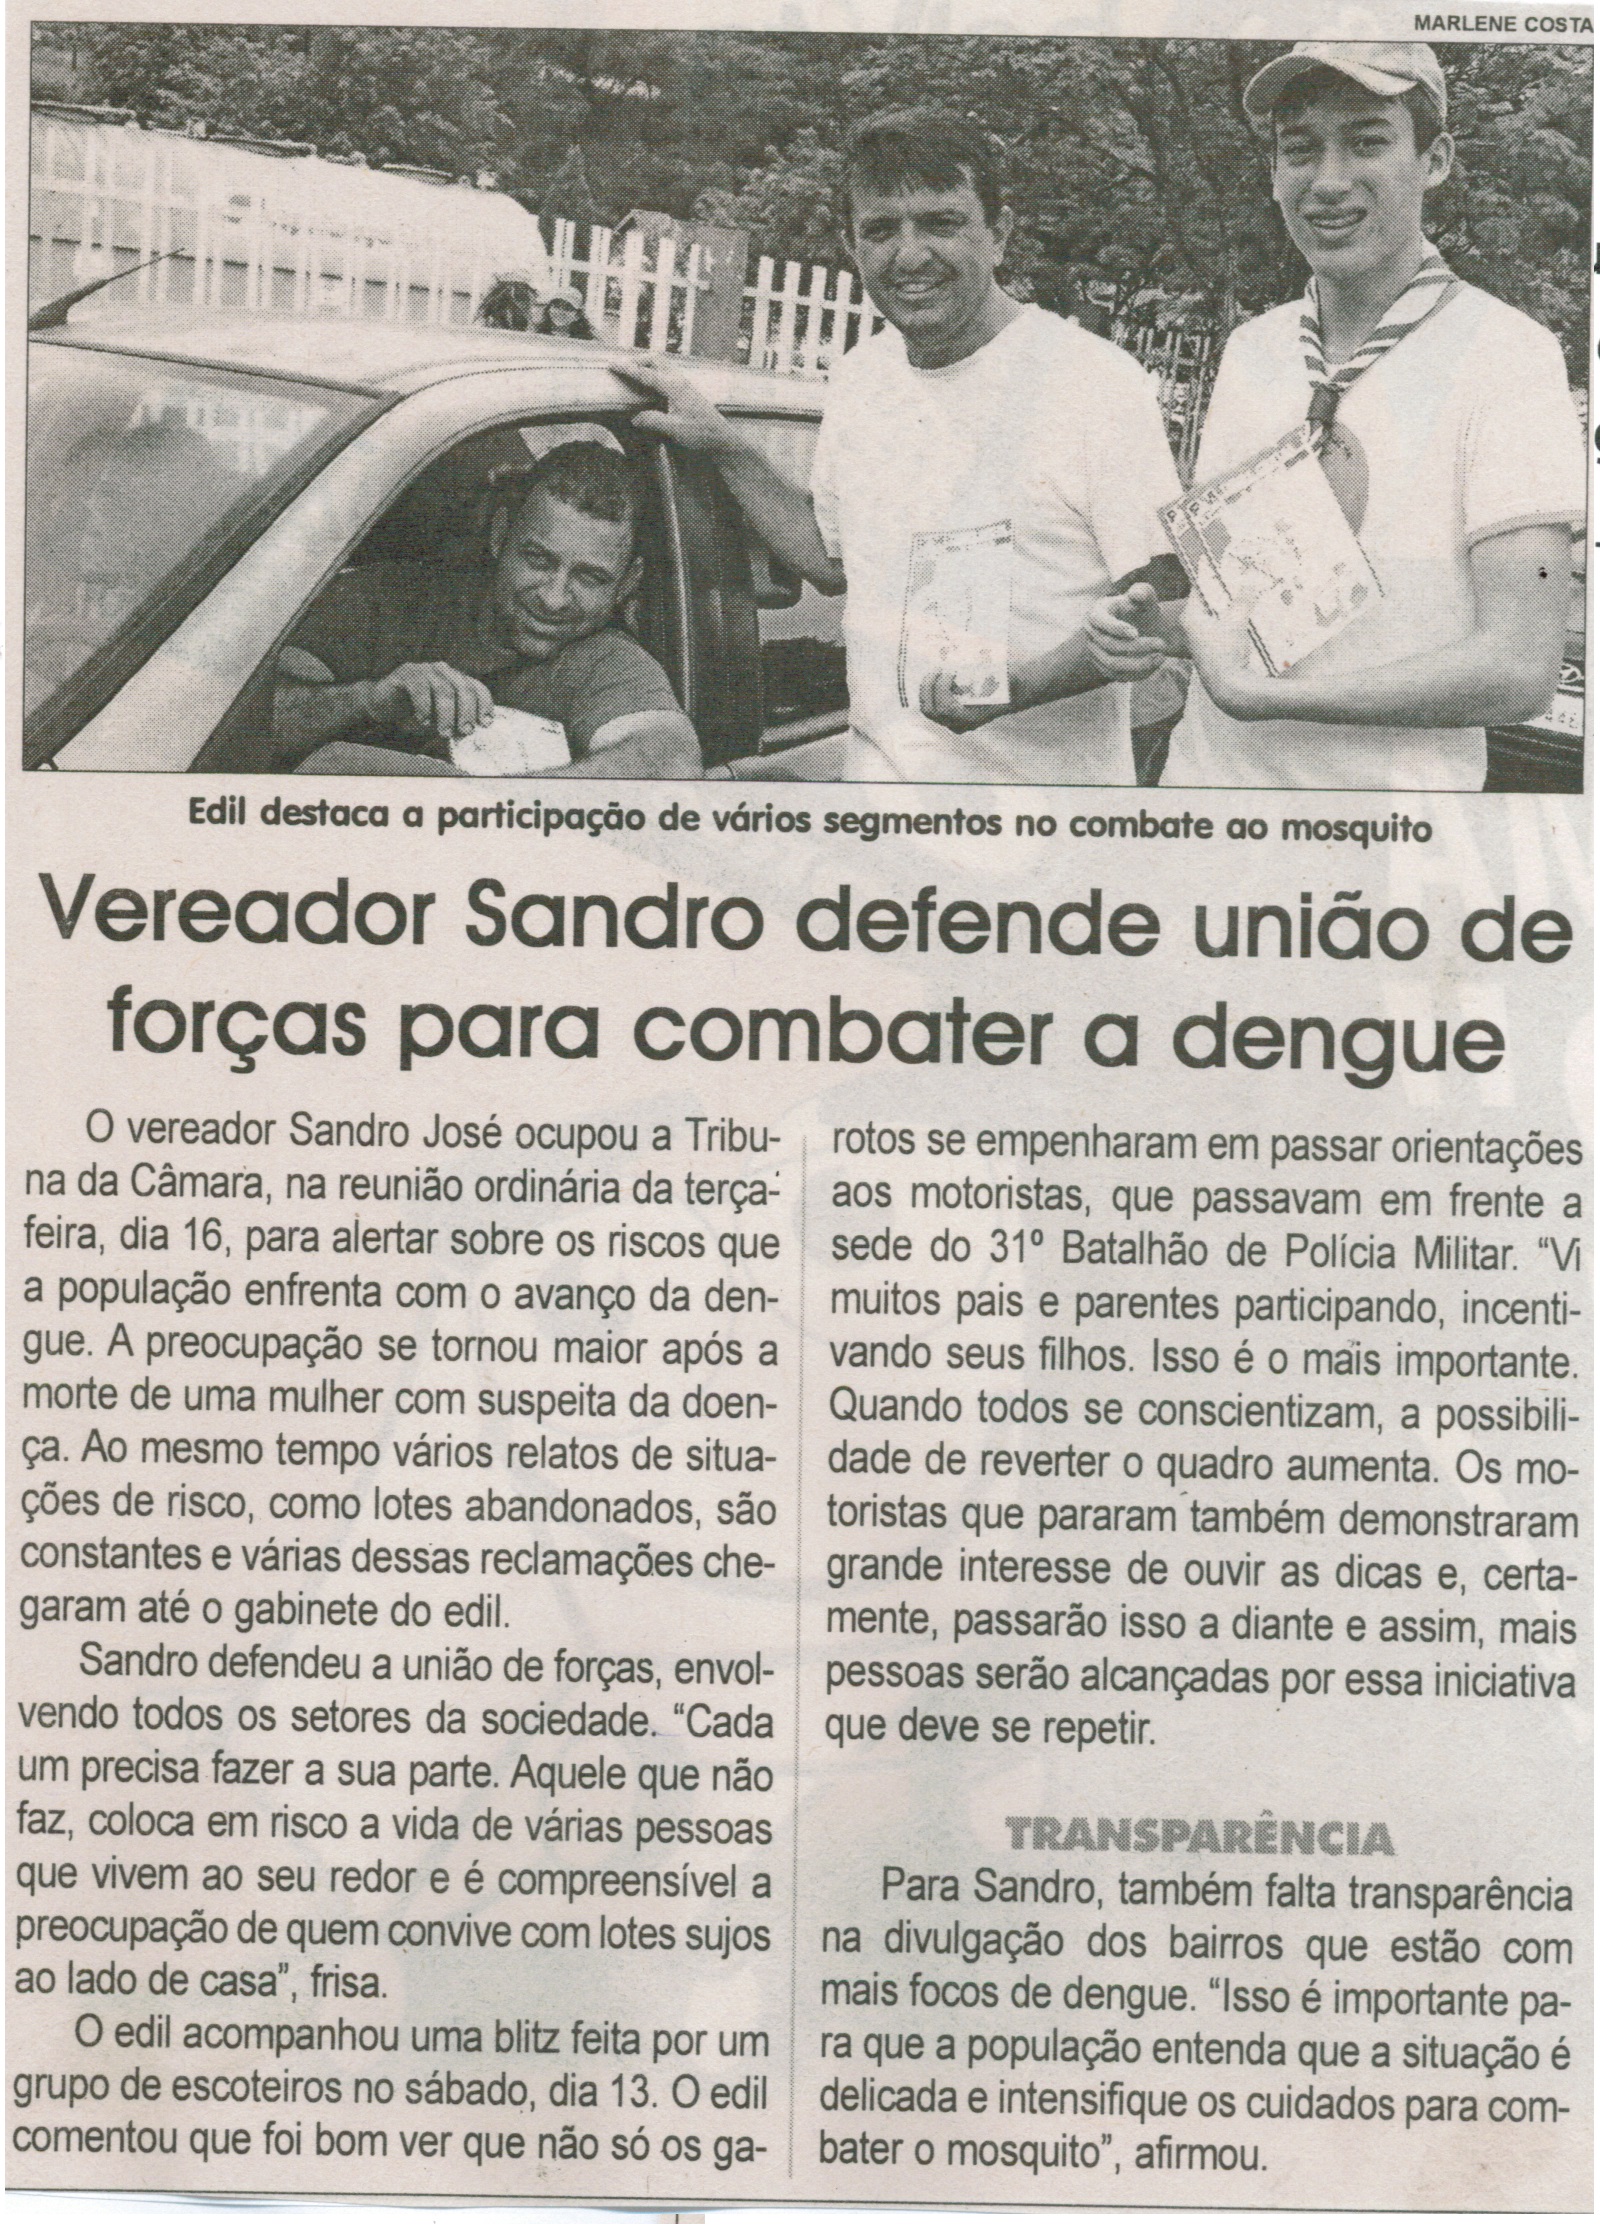 Vereador Sandro defende União de forças para combater a dengue. Jornal Correio da Cidade, Conselheiro Lafaiete, 20 a 26 de fev. 2016, 1305ª ed., Caderno Política, p. 6.